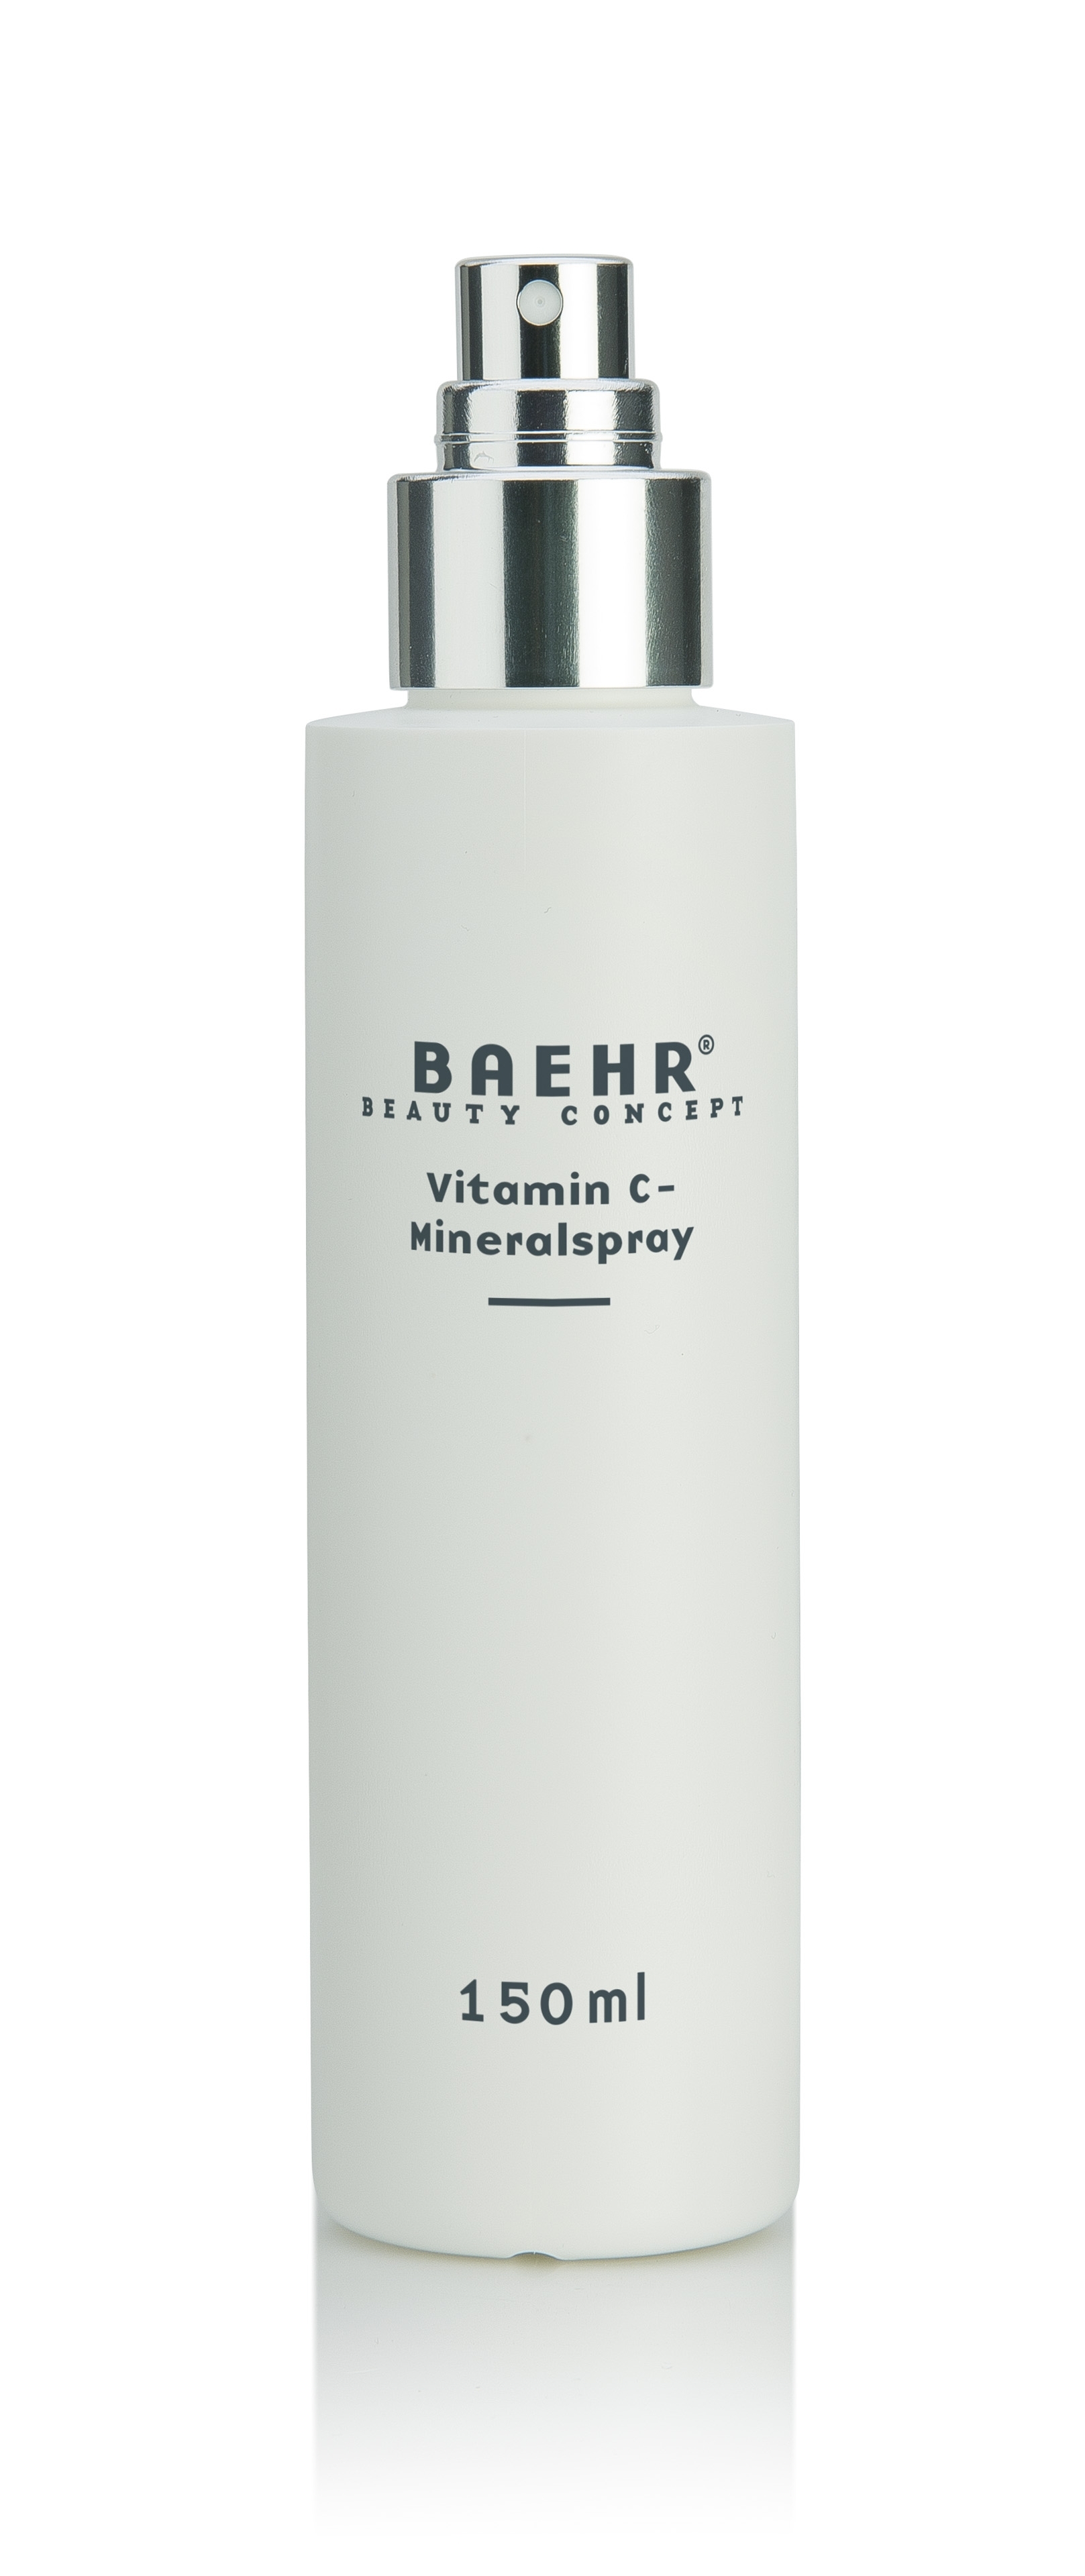 BAEHR BEAUTY CONCEPT - Vitamin C-Mineralspray, 150 ml